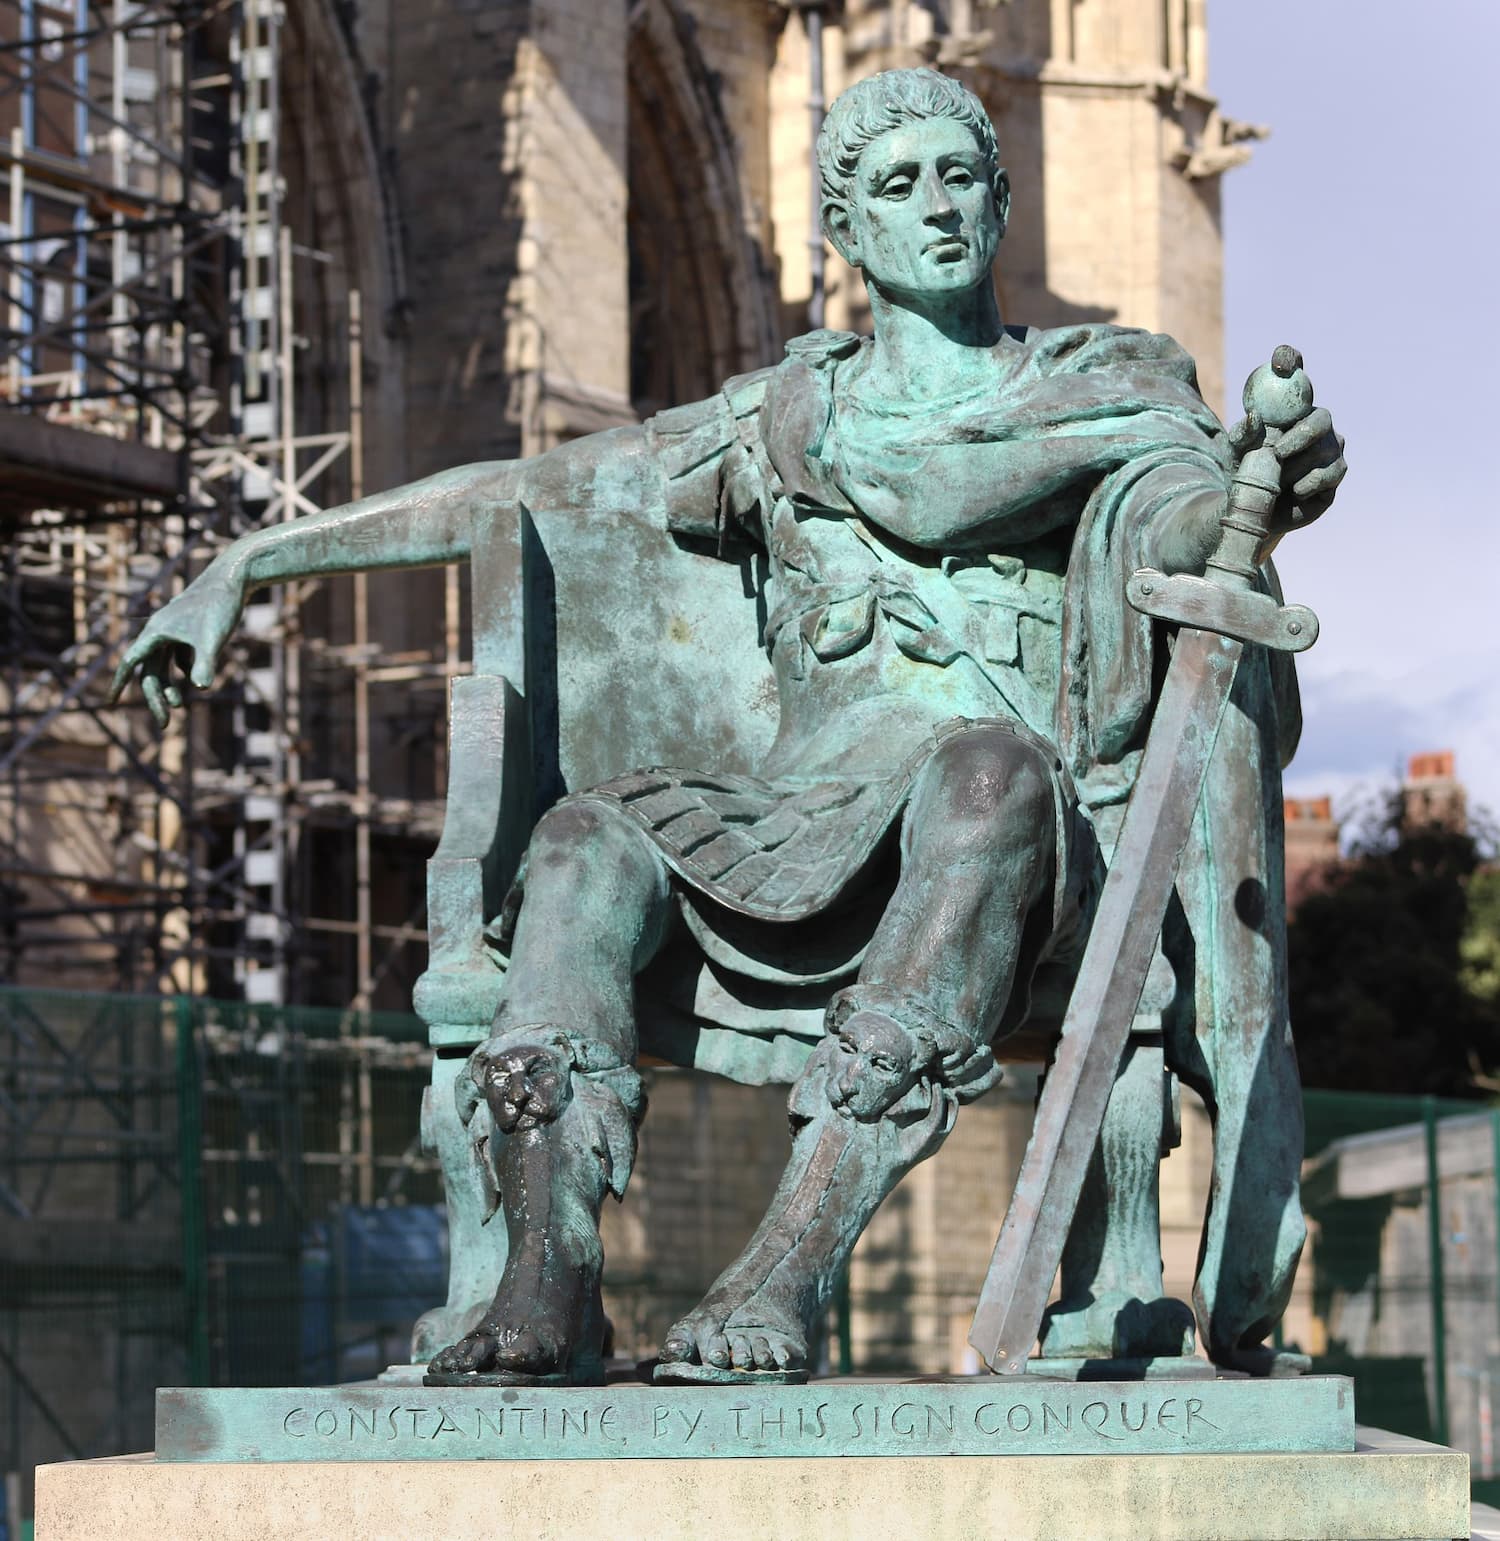 I. Konstantin'in İngiltere'nin York kentinde, 306 yılında Augustus ilan edildiği yerin yakınında bulunan modern bronz heykeli